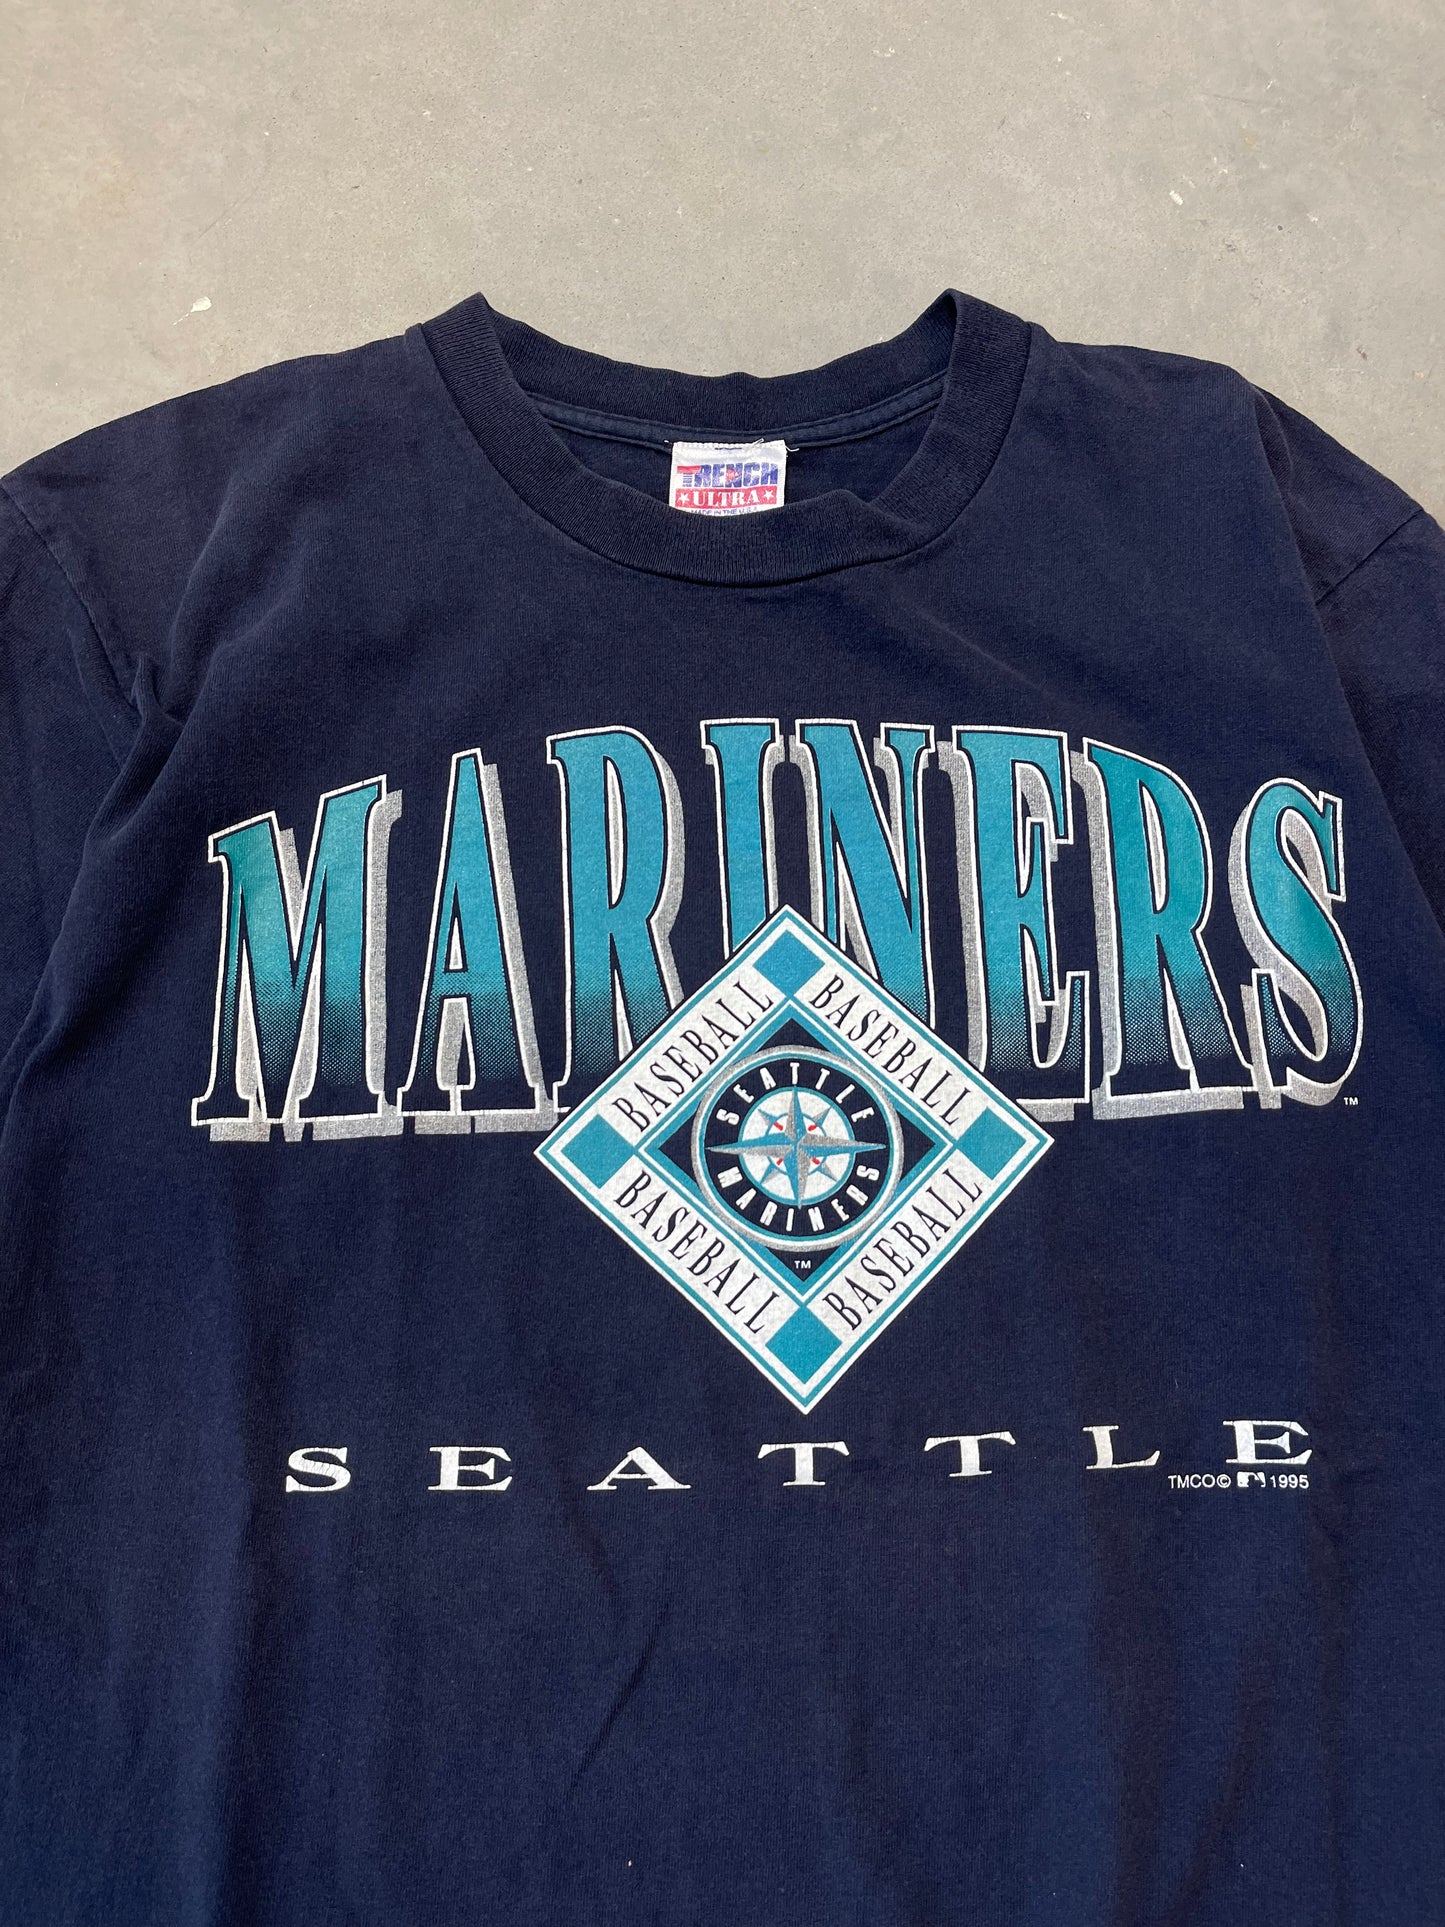 1995 Seattle Mariners Vintage MLB Tee (Large)